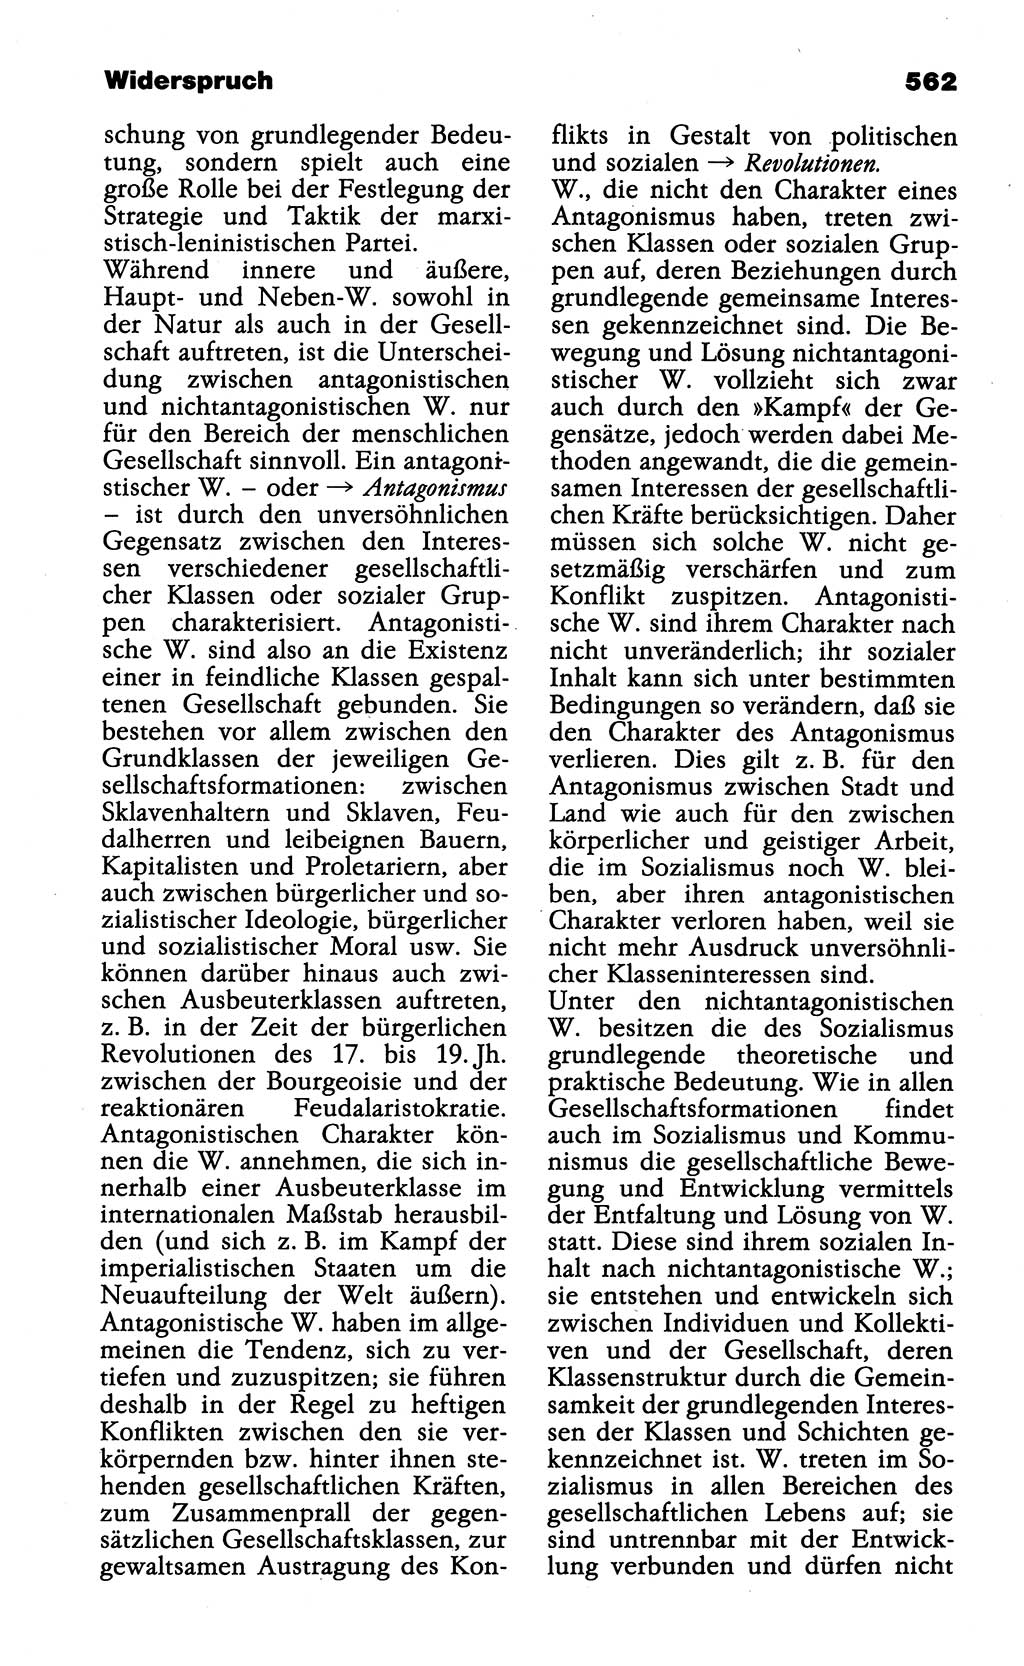 WÃ¶rterbuch der marxistisch-leninistischen Philosophie [Deutsche Demokratische Republik (DDR)] 1985, Seite 562 (Wb. ML Phil. DDR 1985, S. 562)